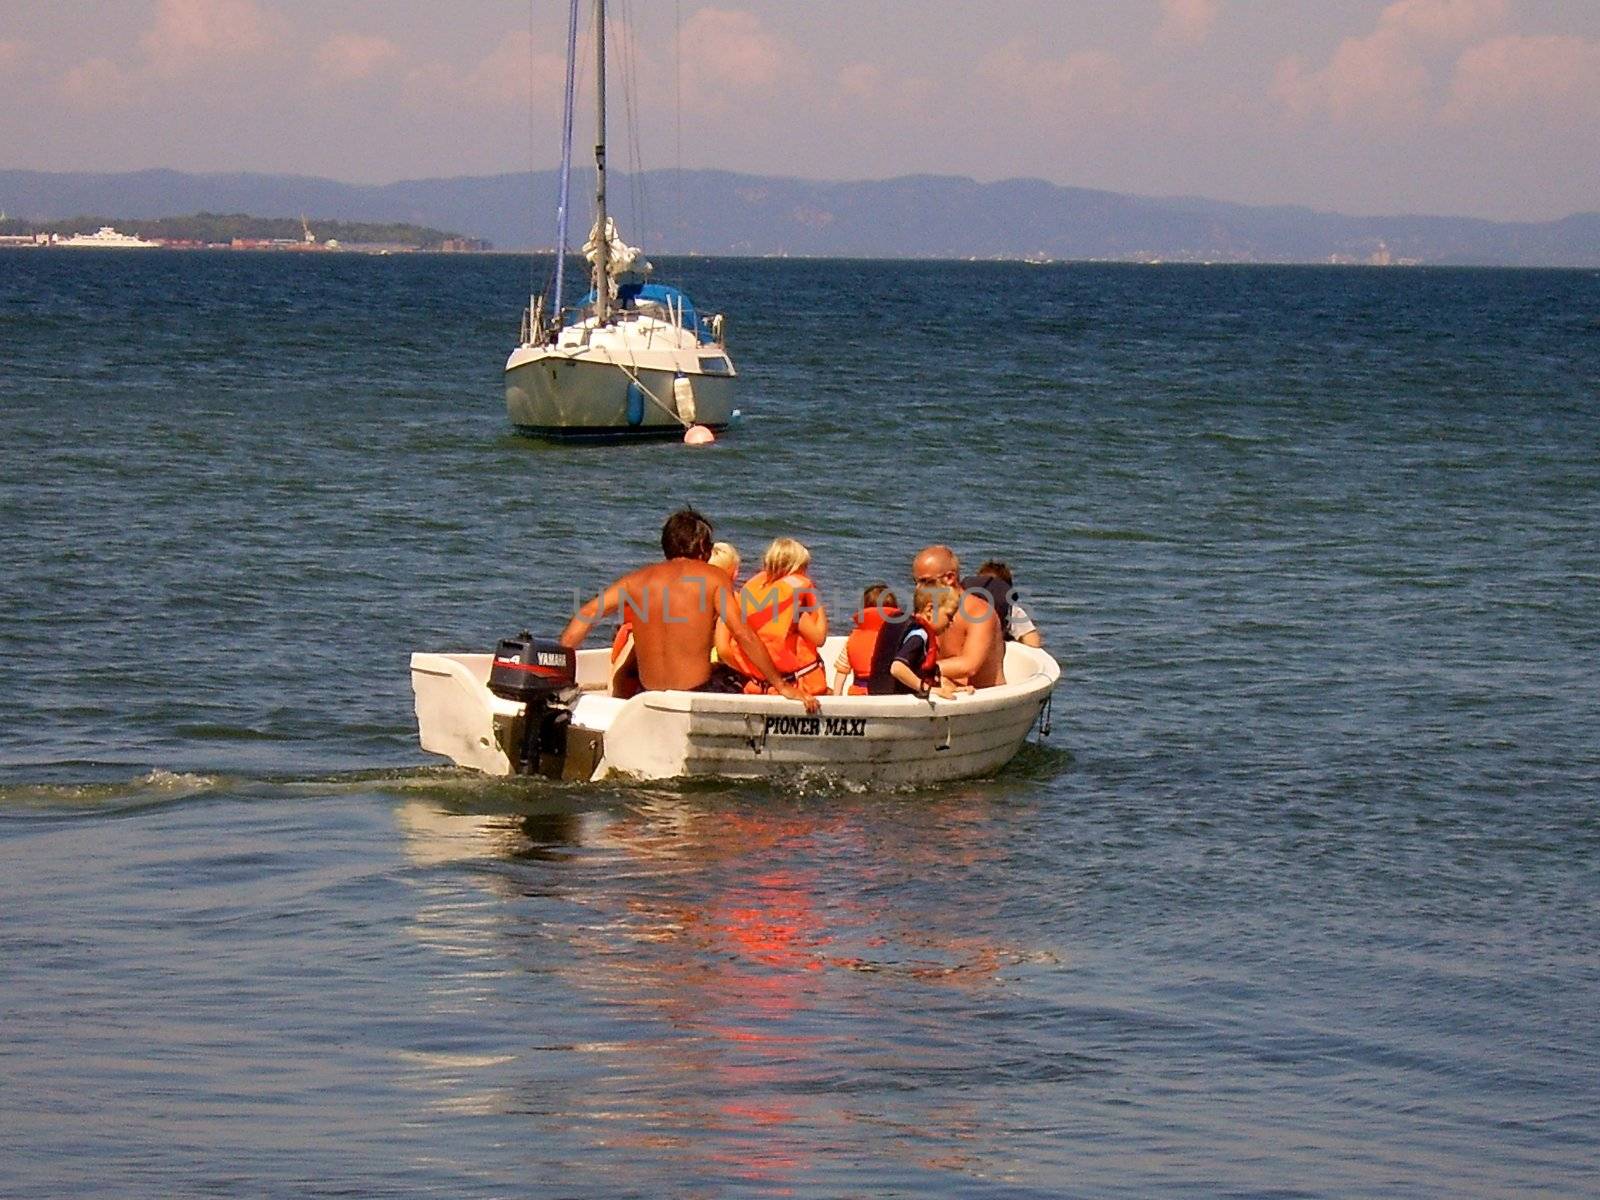 Scandinavian Lifestyle - people on the boat by Bildehagen